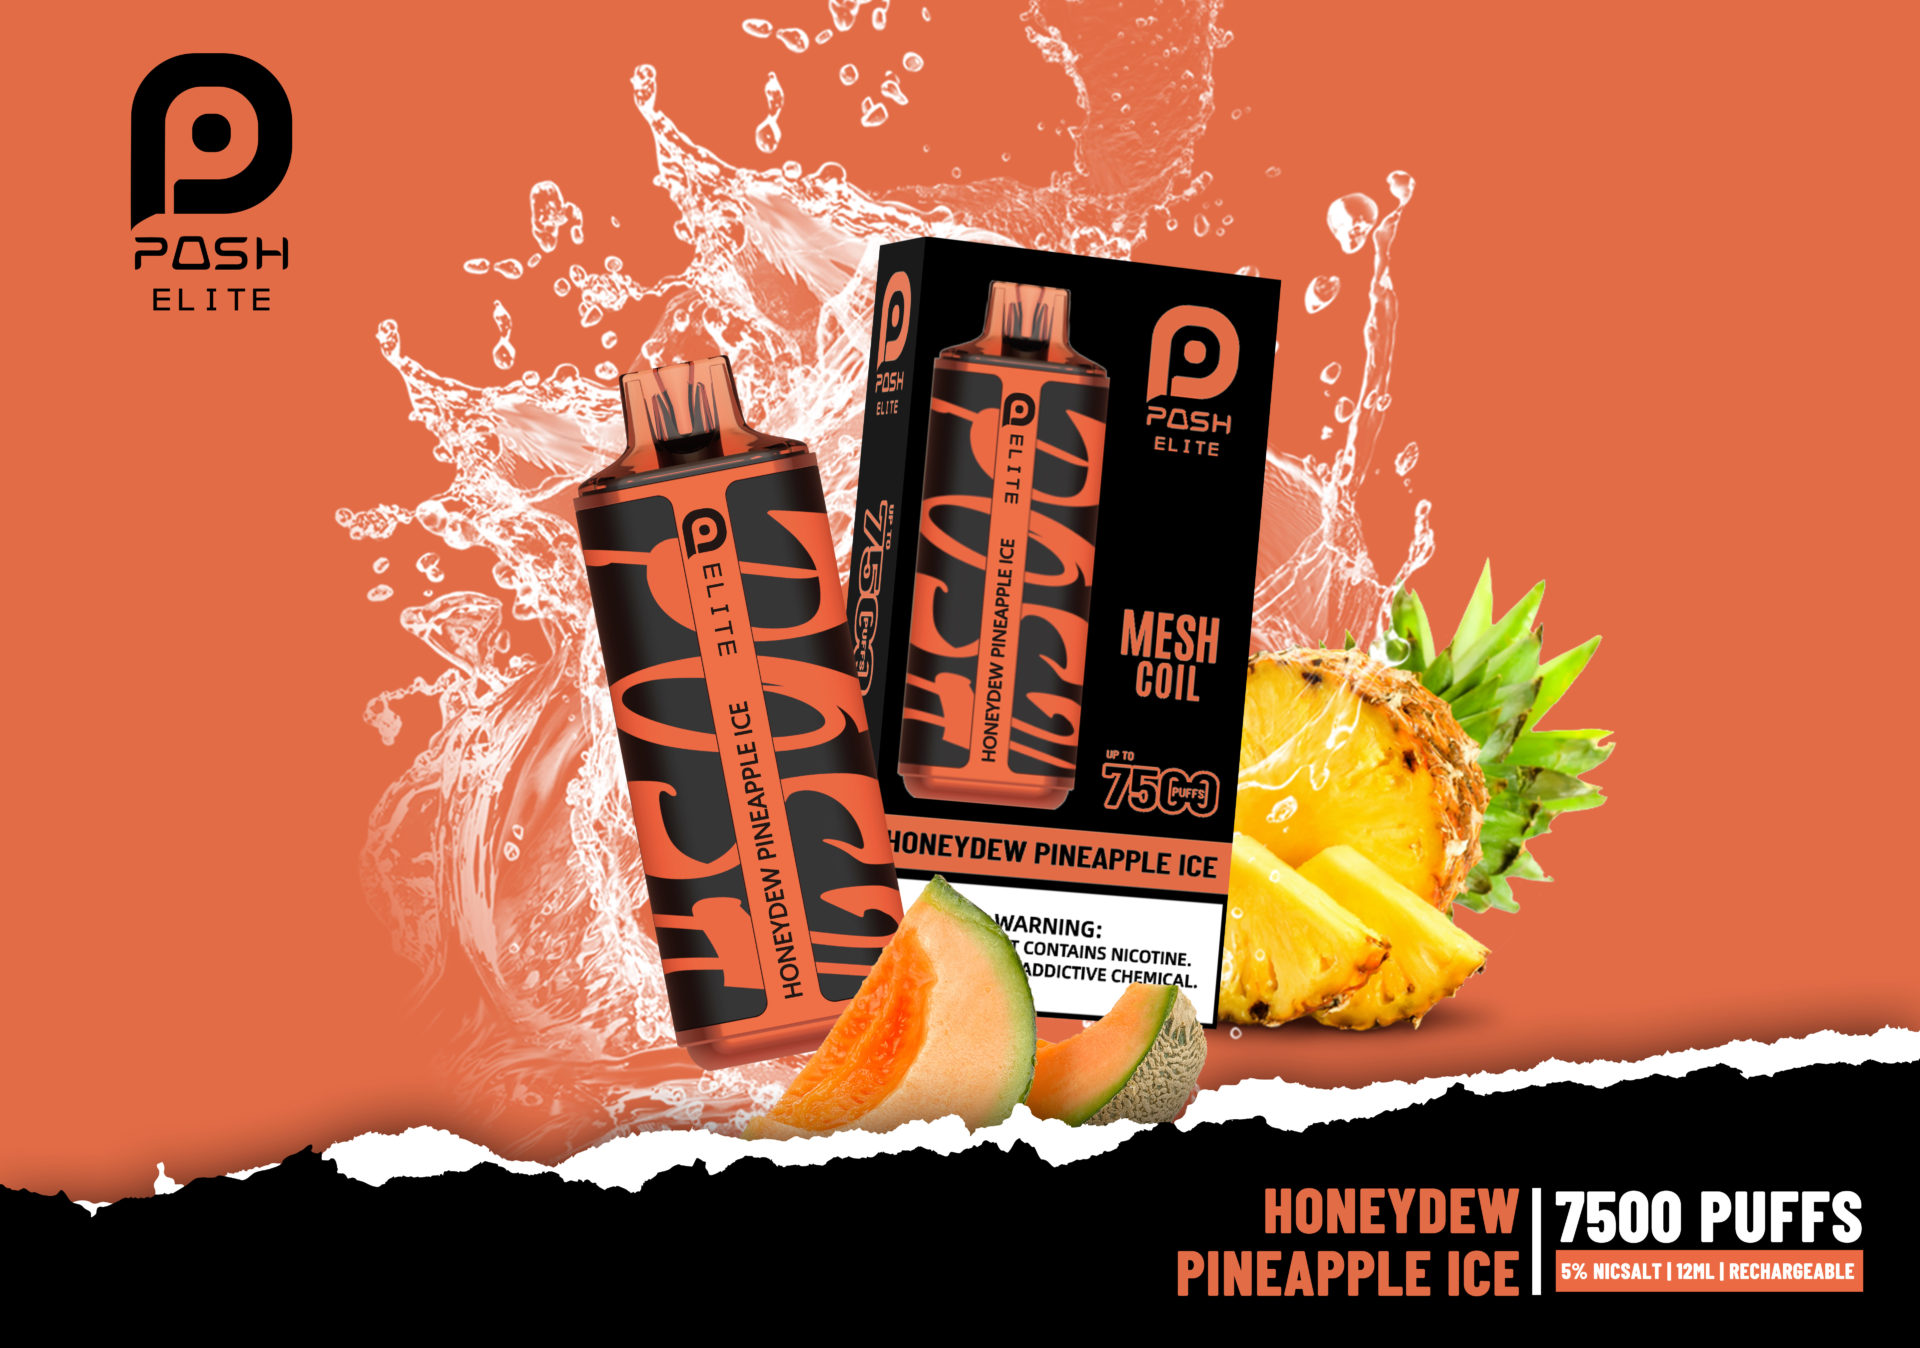 Posh Elite 7500 Honeydew Pineapple Ice - 5 in 1 - 60ML/Box